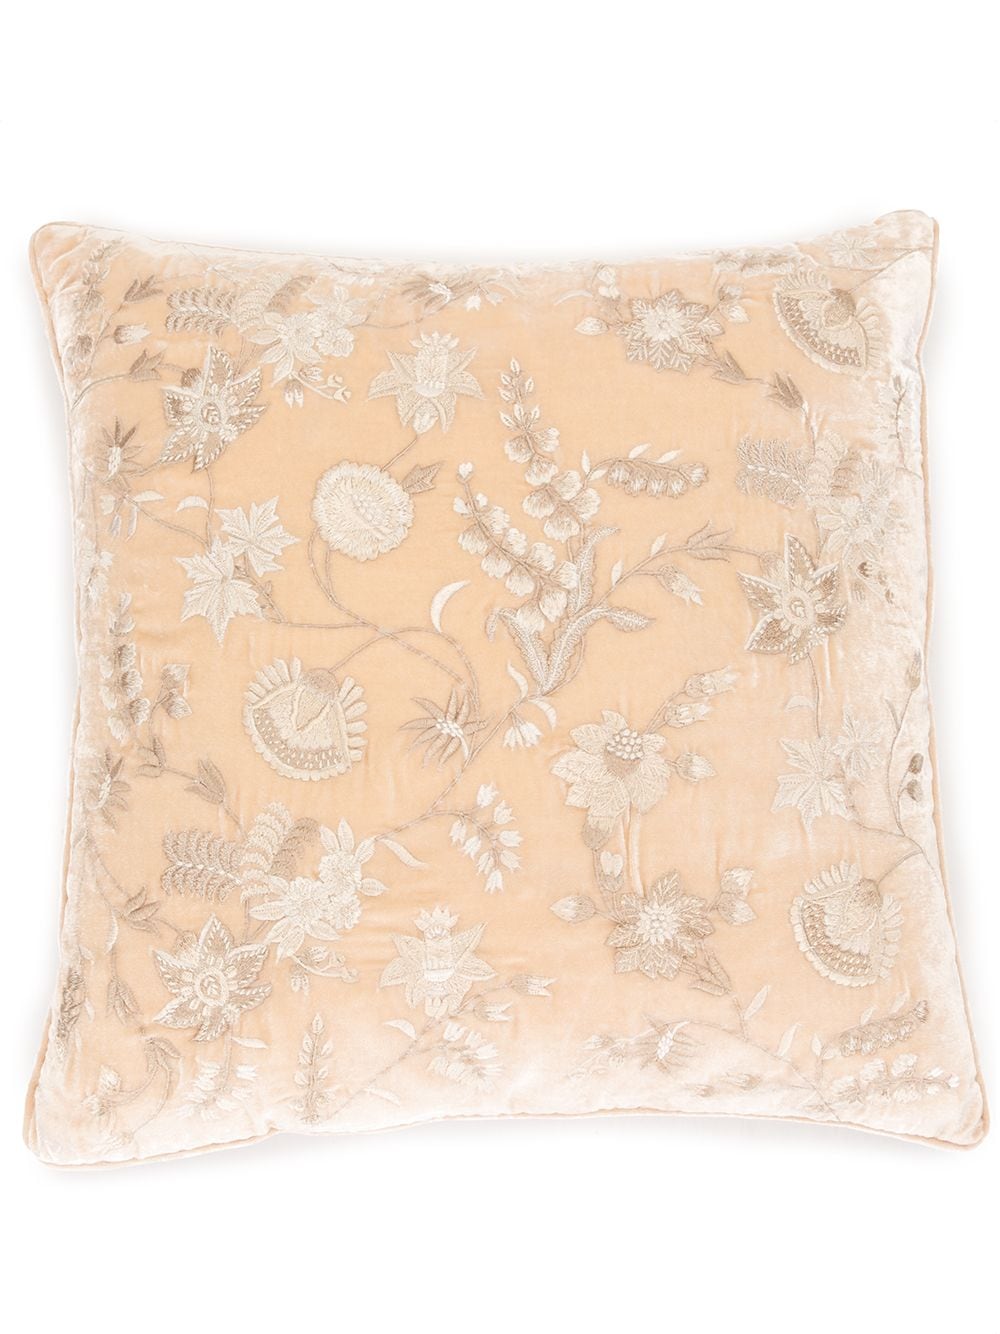 Anke Drechsel embroidered floral cushion - Pink von Anke Drechsel